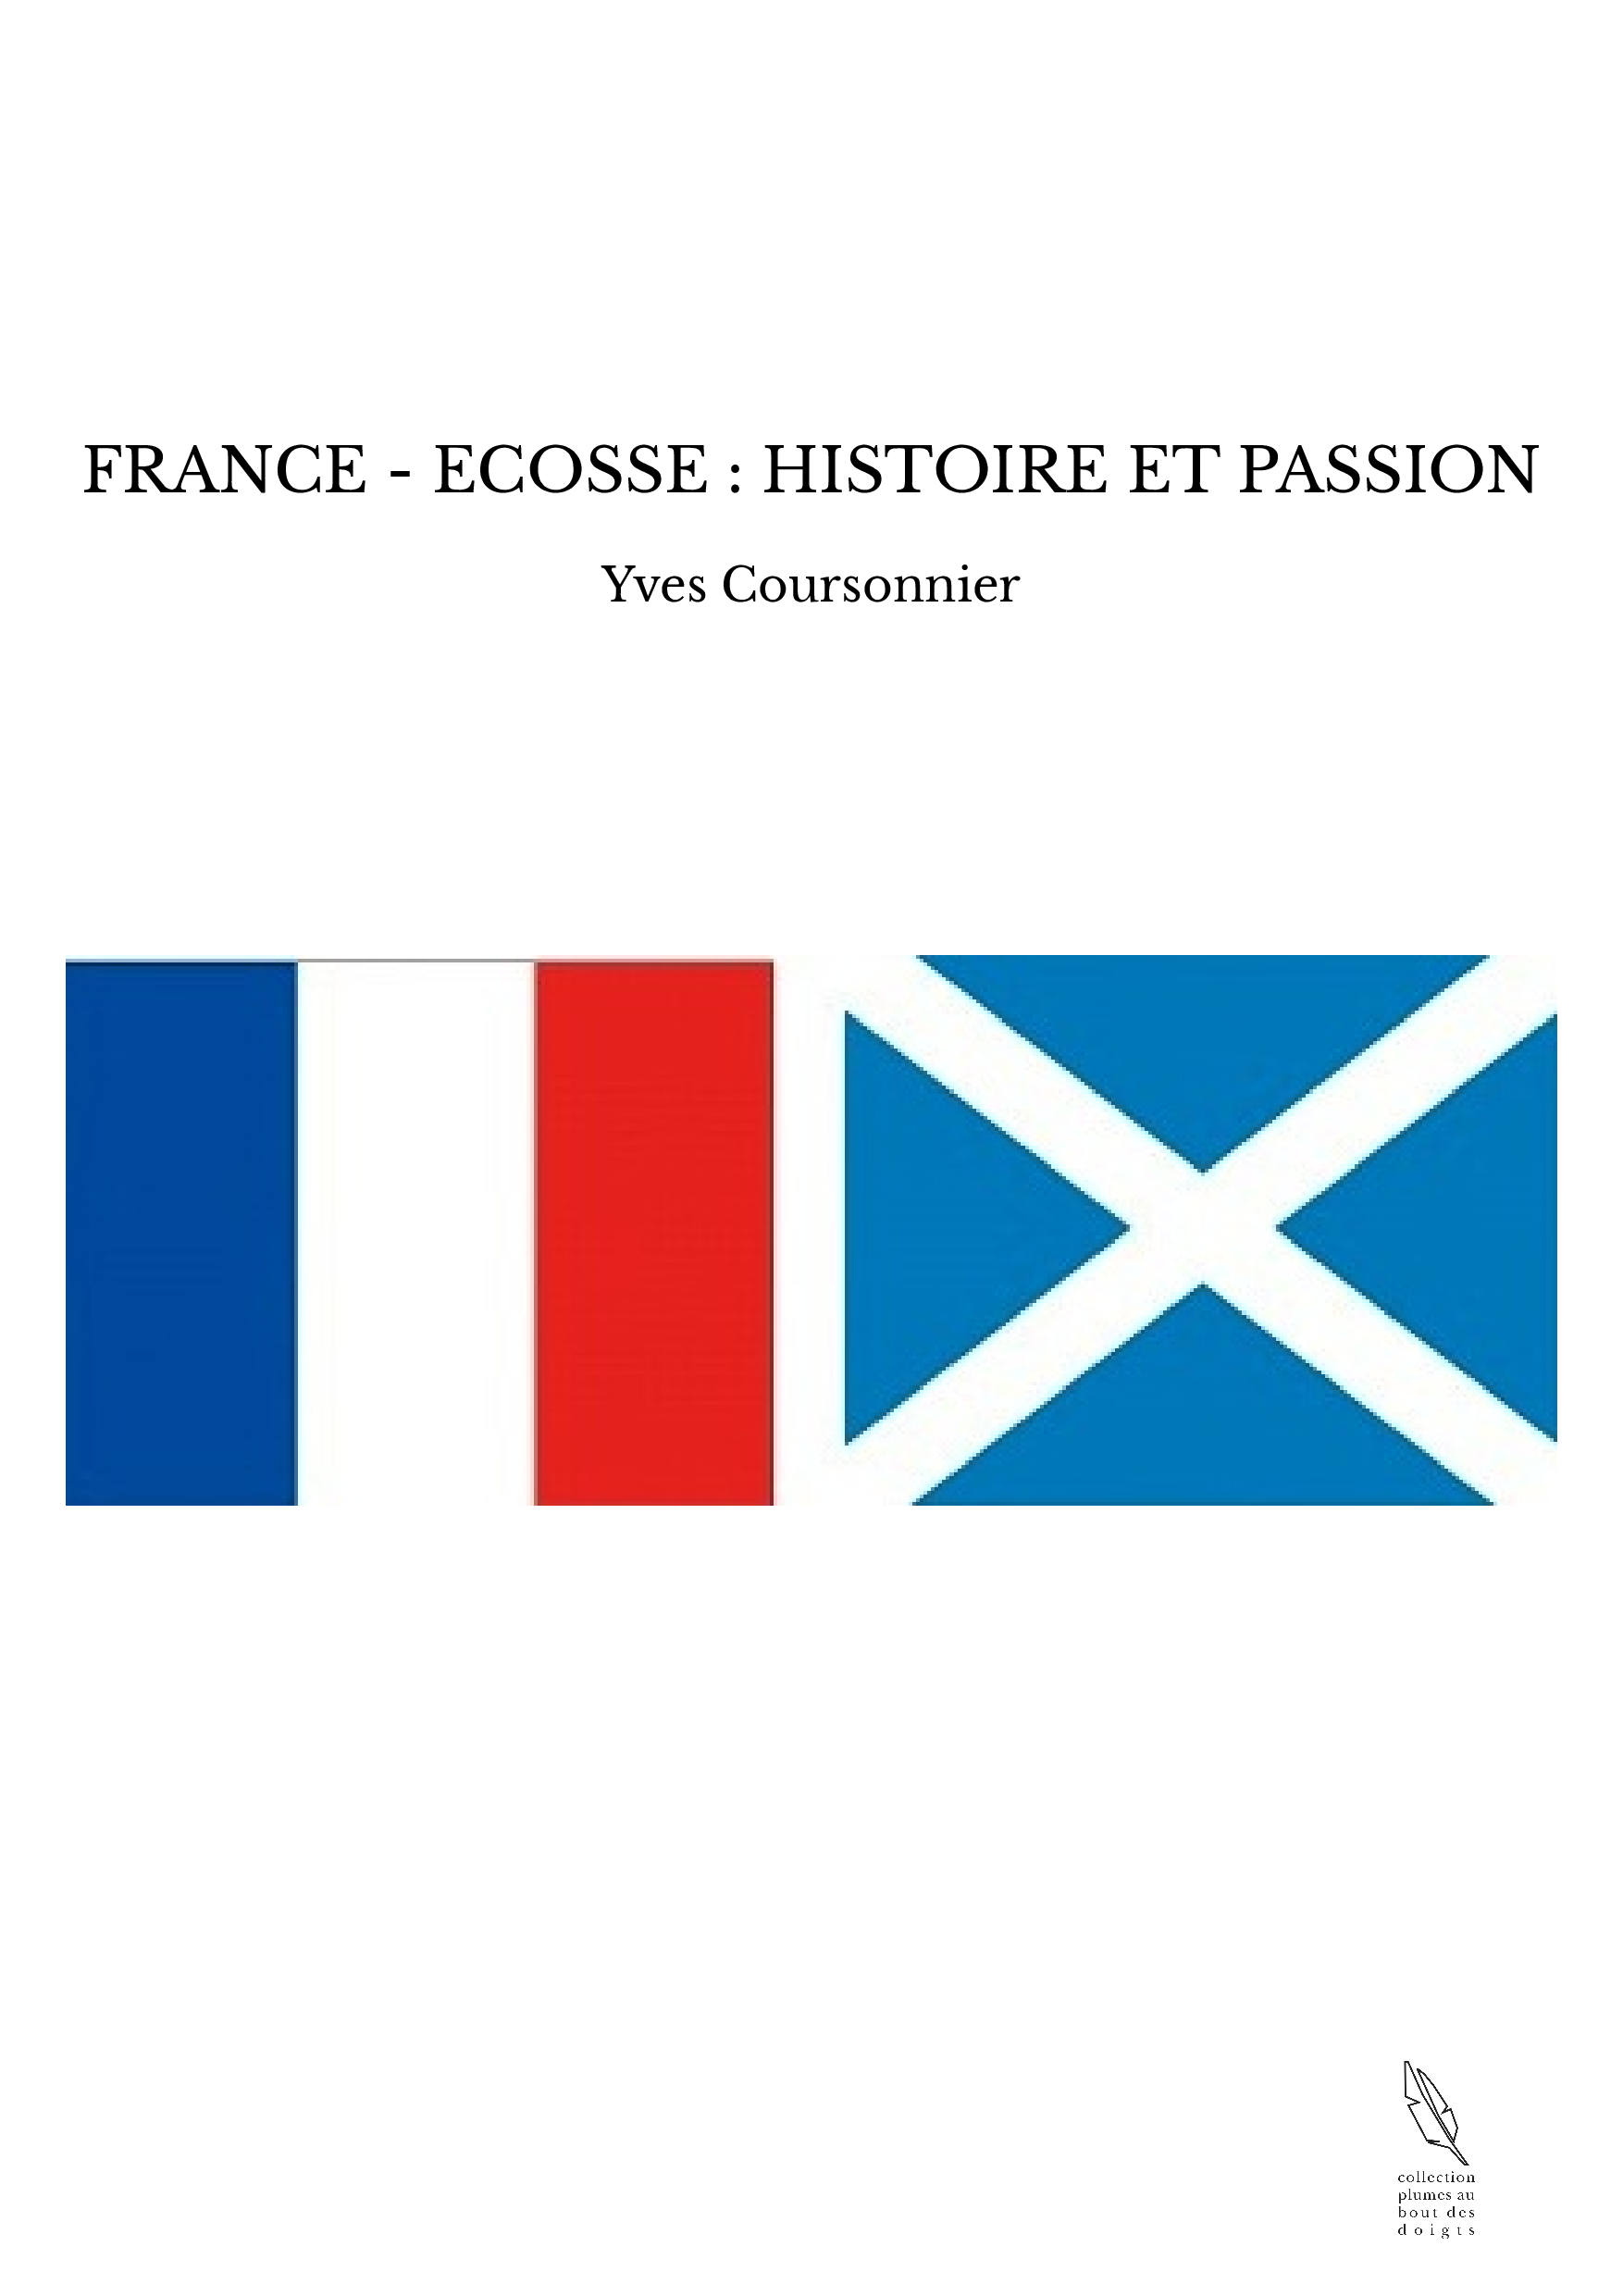 FRANCE - ECOSSE : HISTOIRE ET PASSION